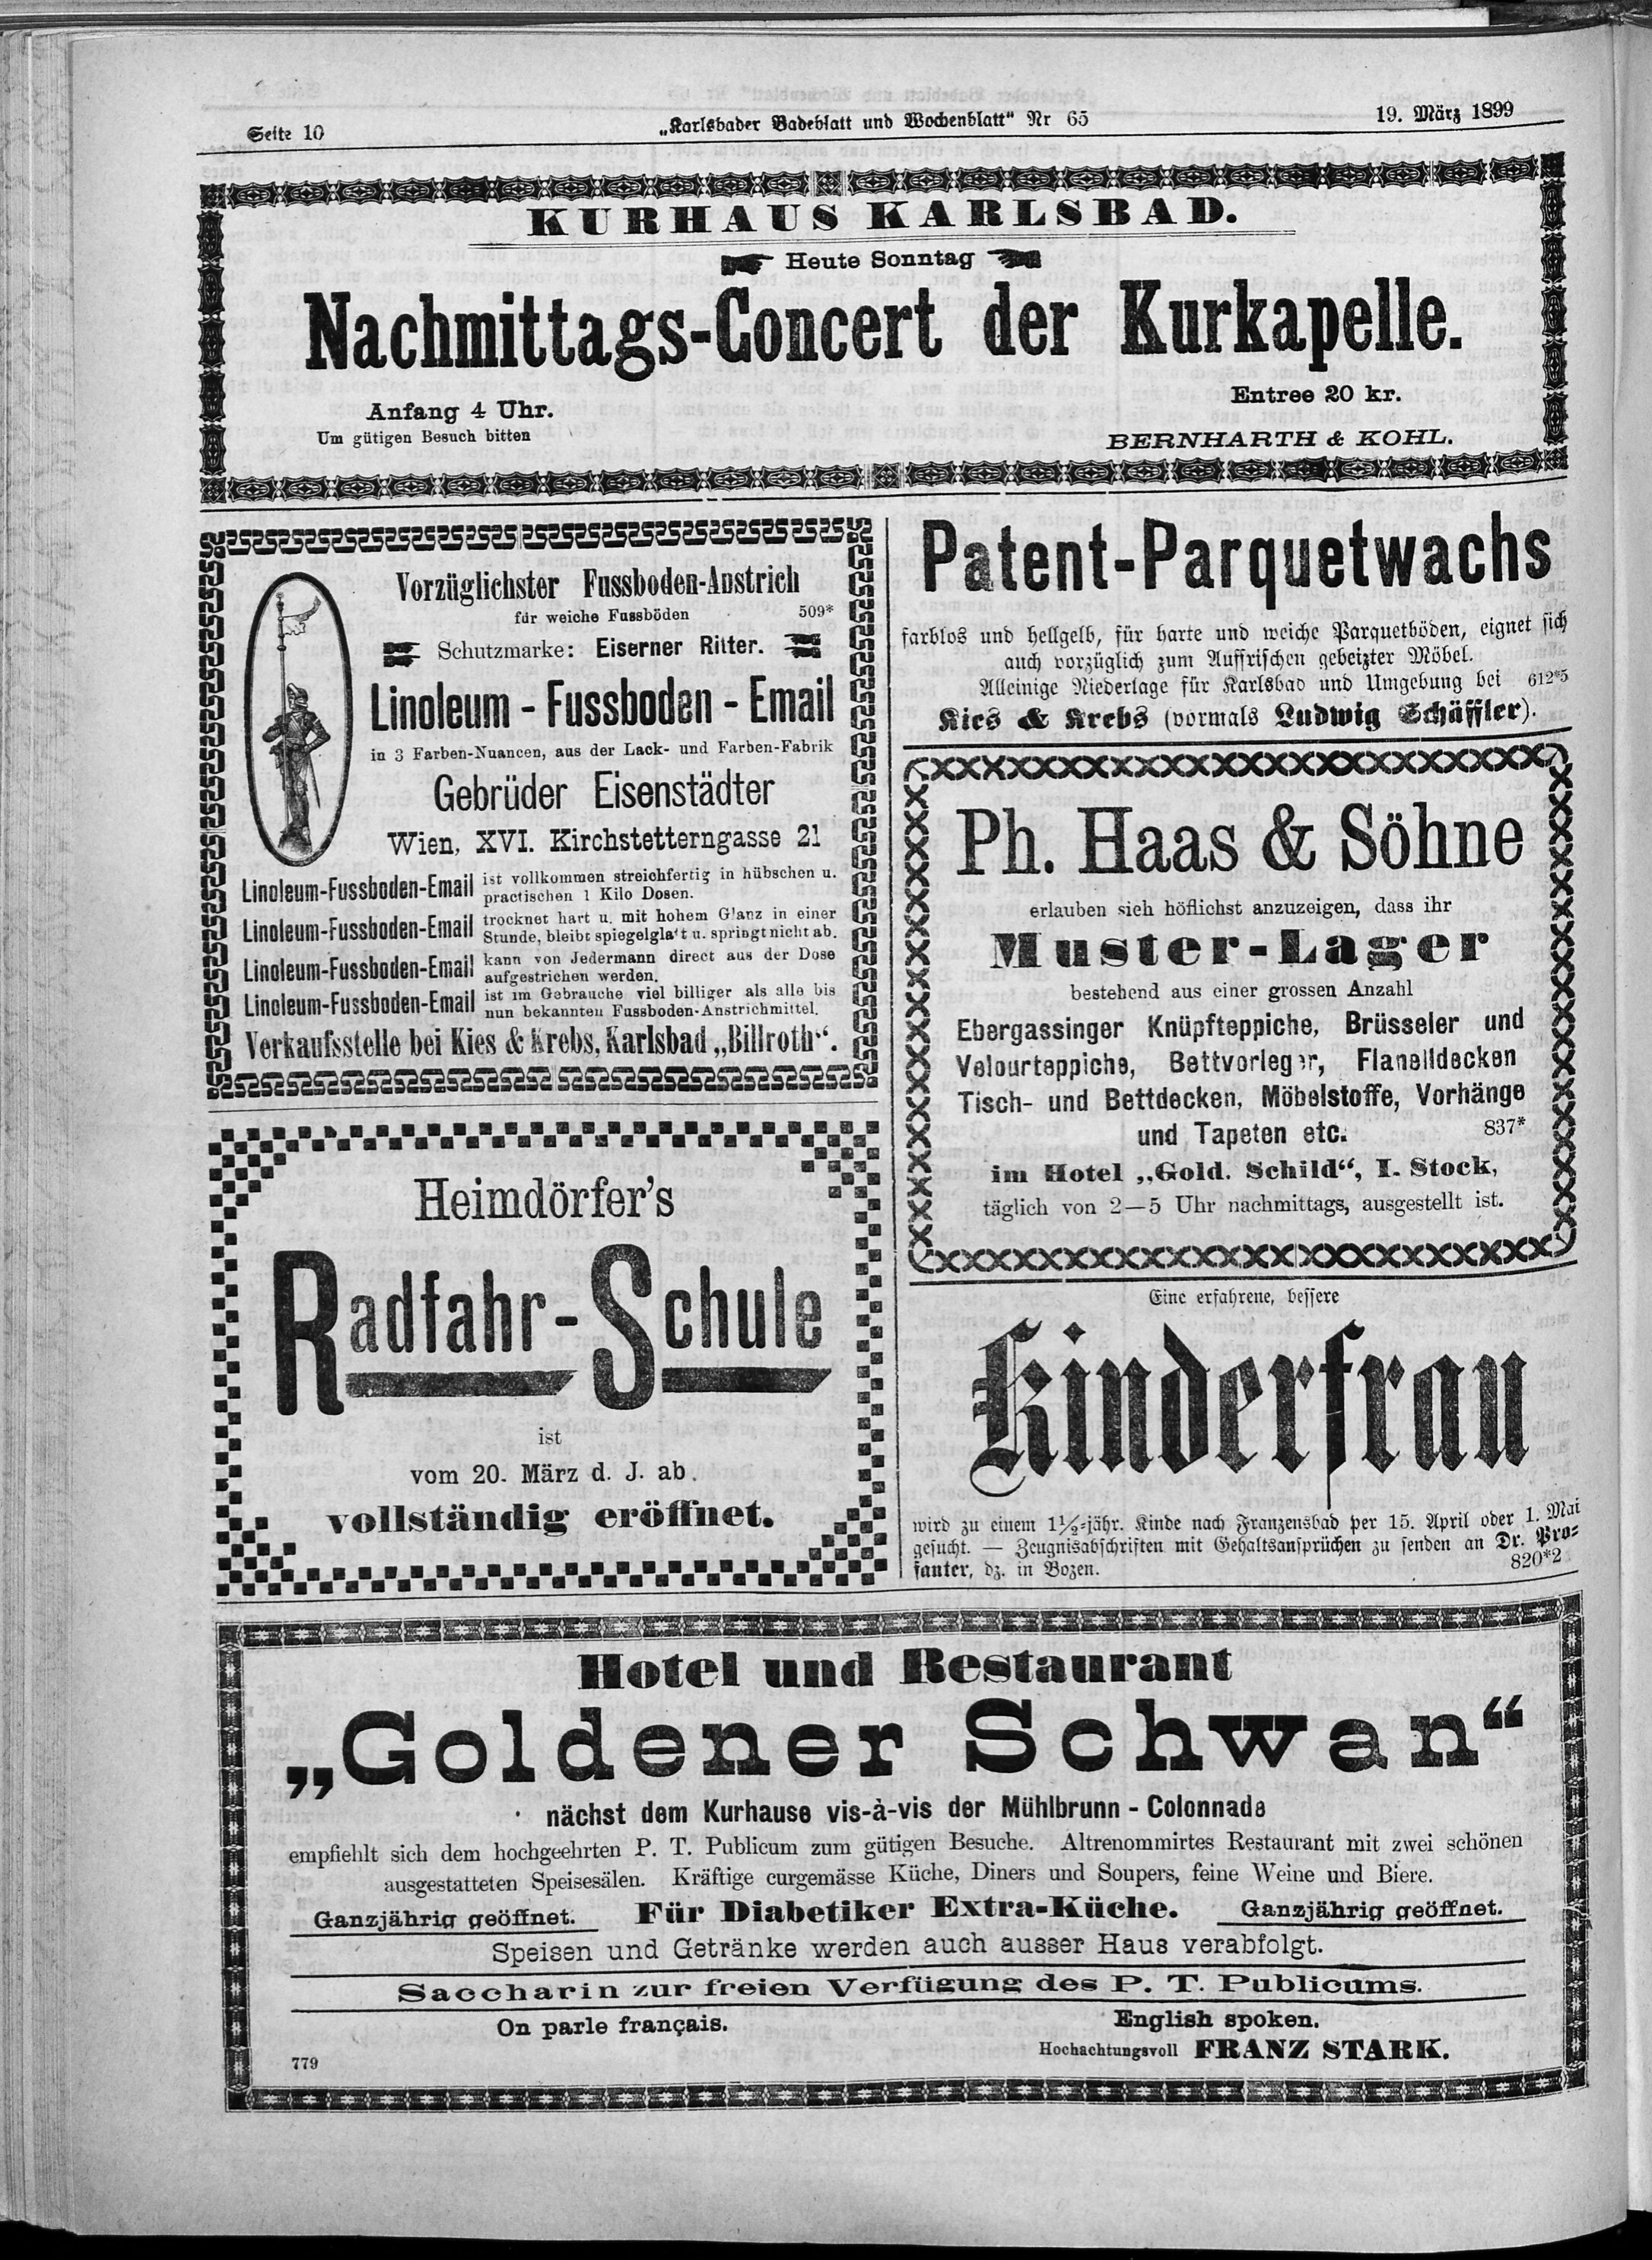 10. karlsbader-badeblatt-1899-03-19-n65_2910